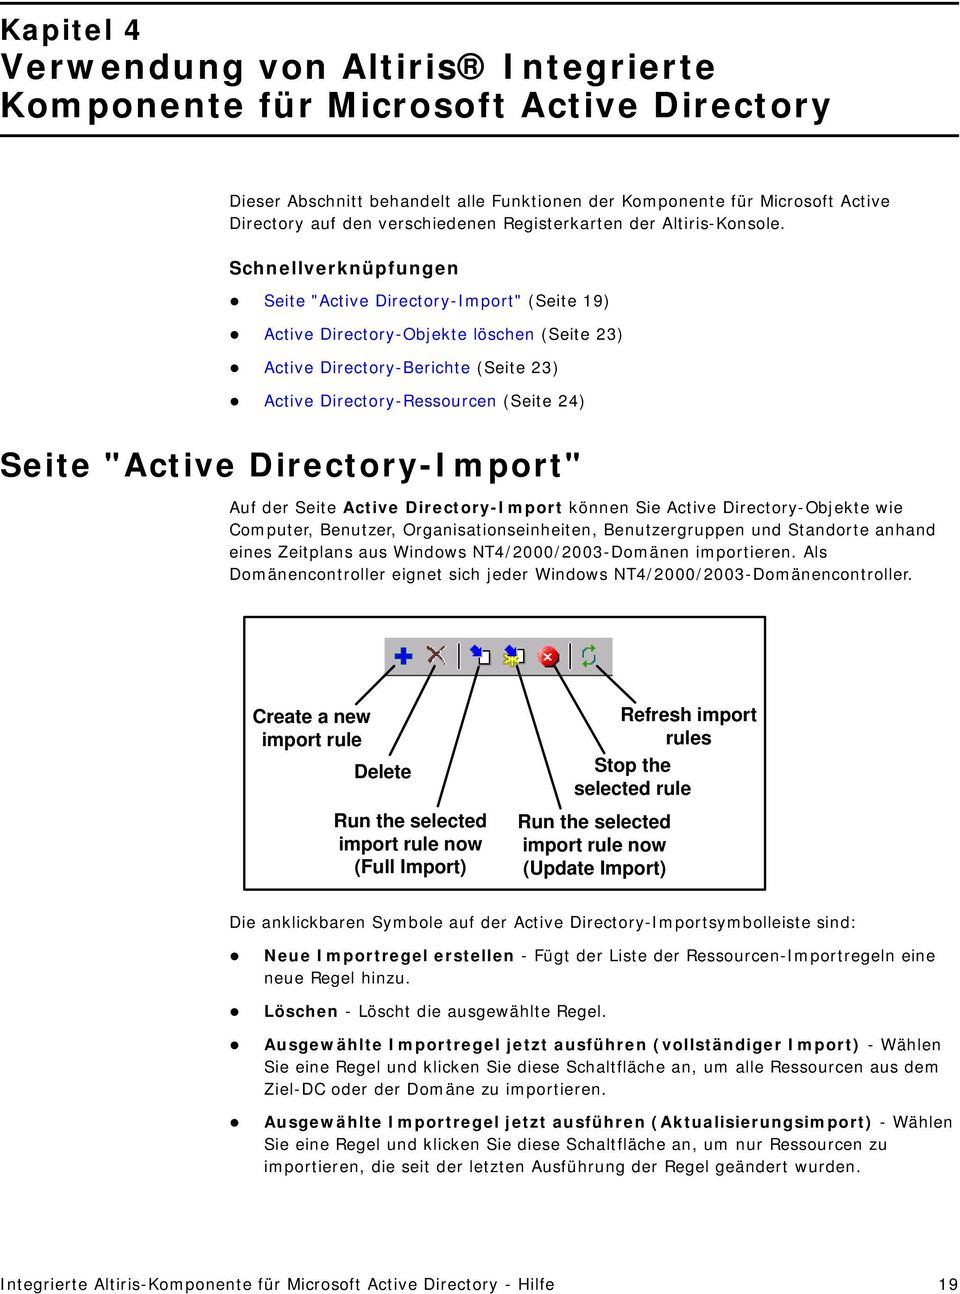 Schnellverknüpfungen Seite "Active Directory-Import" (Seite 19) Active Directory-Objekte löschen (Seite 23) Active Directory-Berichte (Seite 23) Active Directory-Ressourcen (Seite 24) Seite "Active